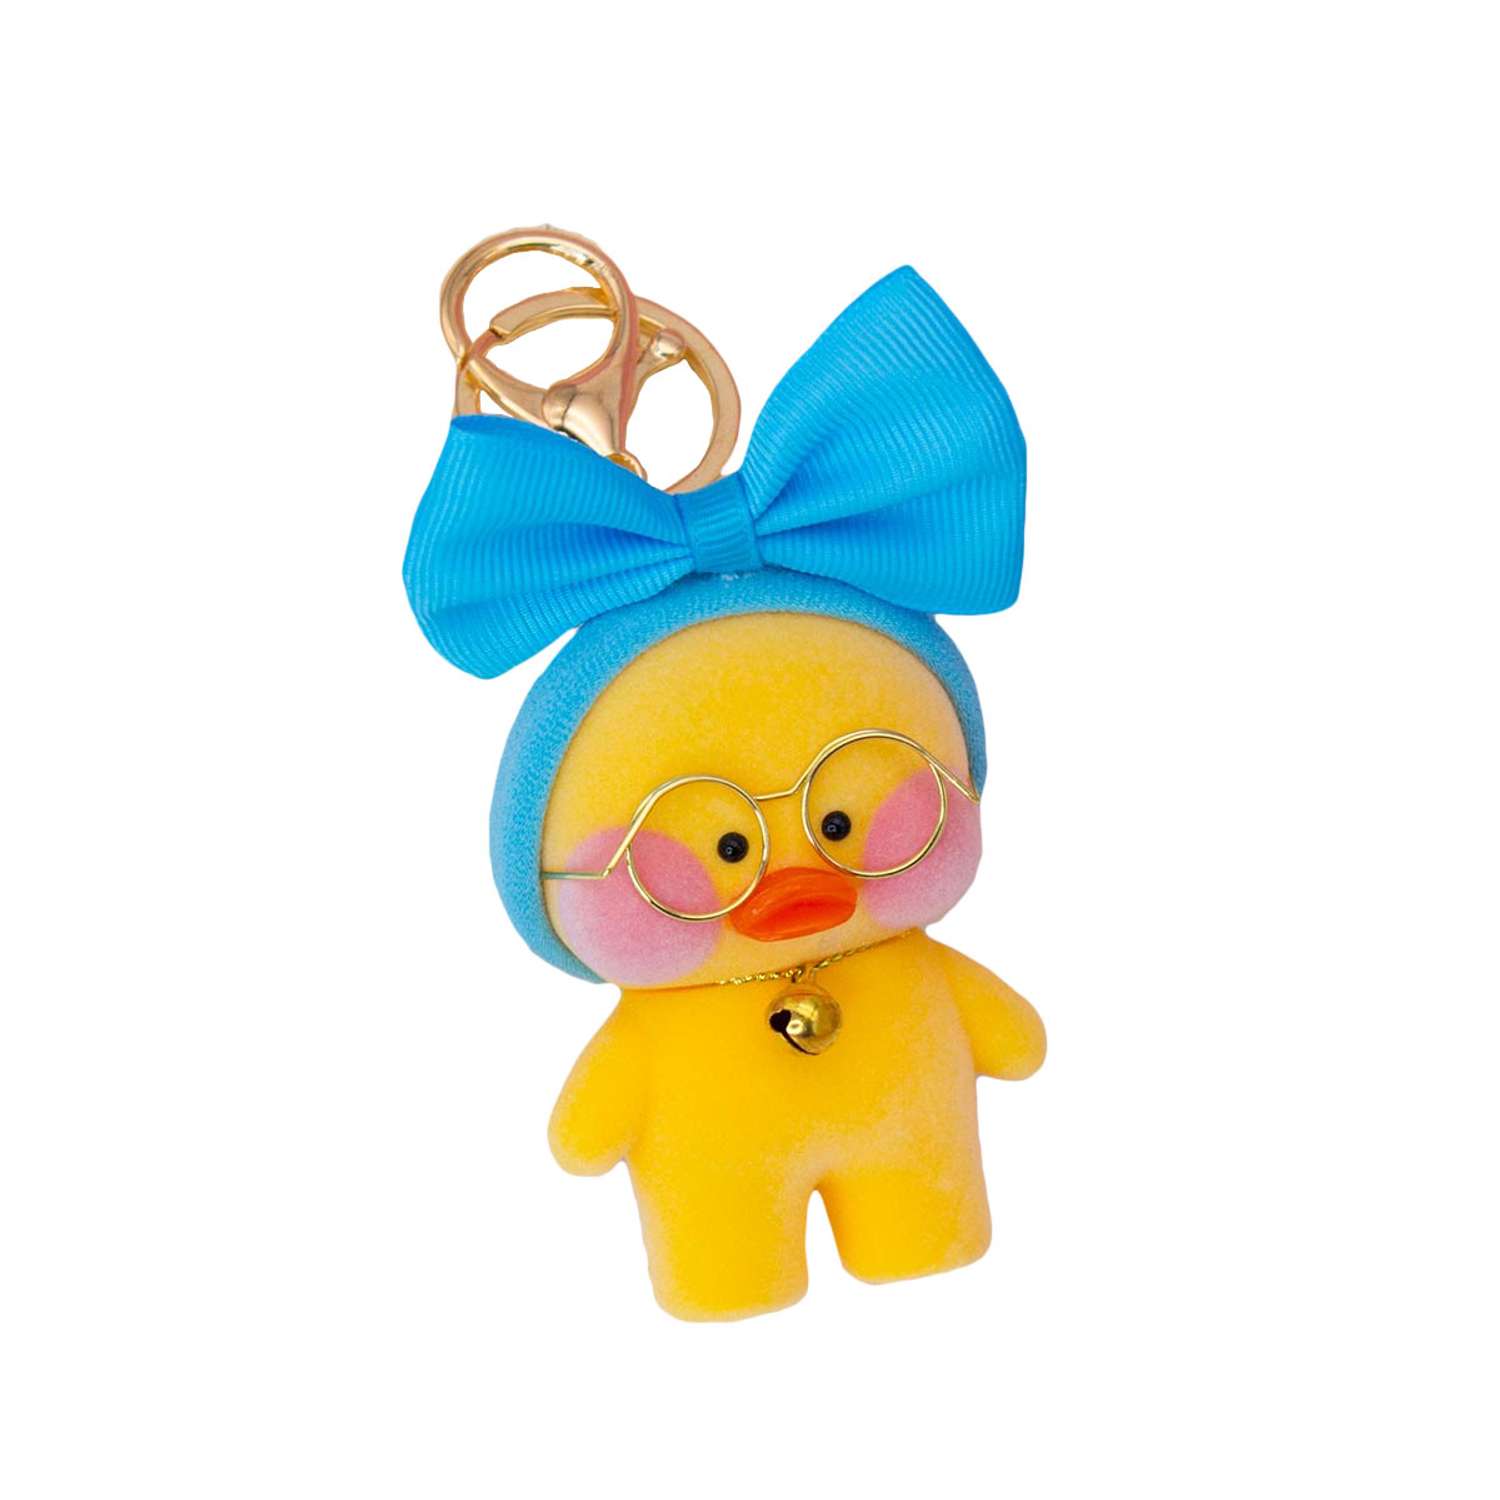 Брелок Михи-Михи Lalafanfan Duck голубой бант на голову желтая - фото 1